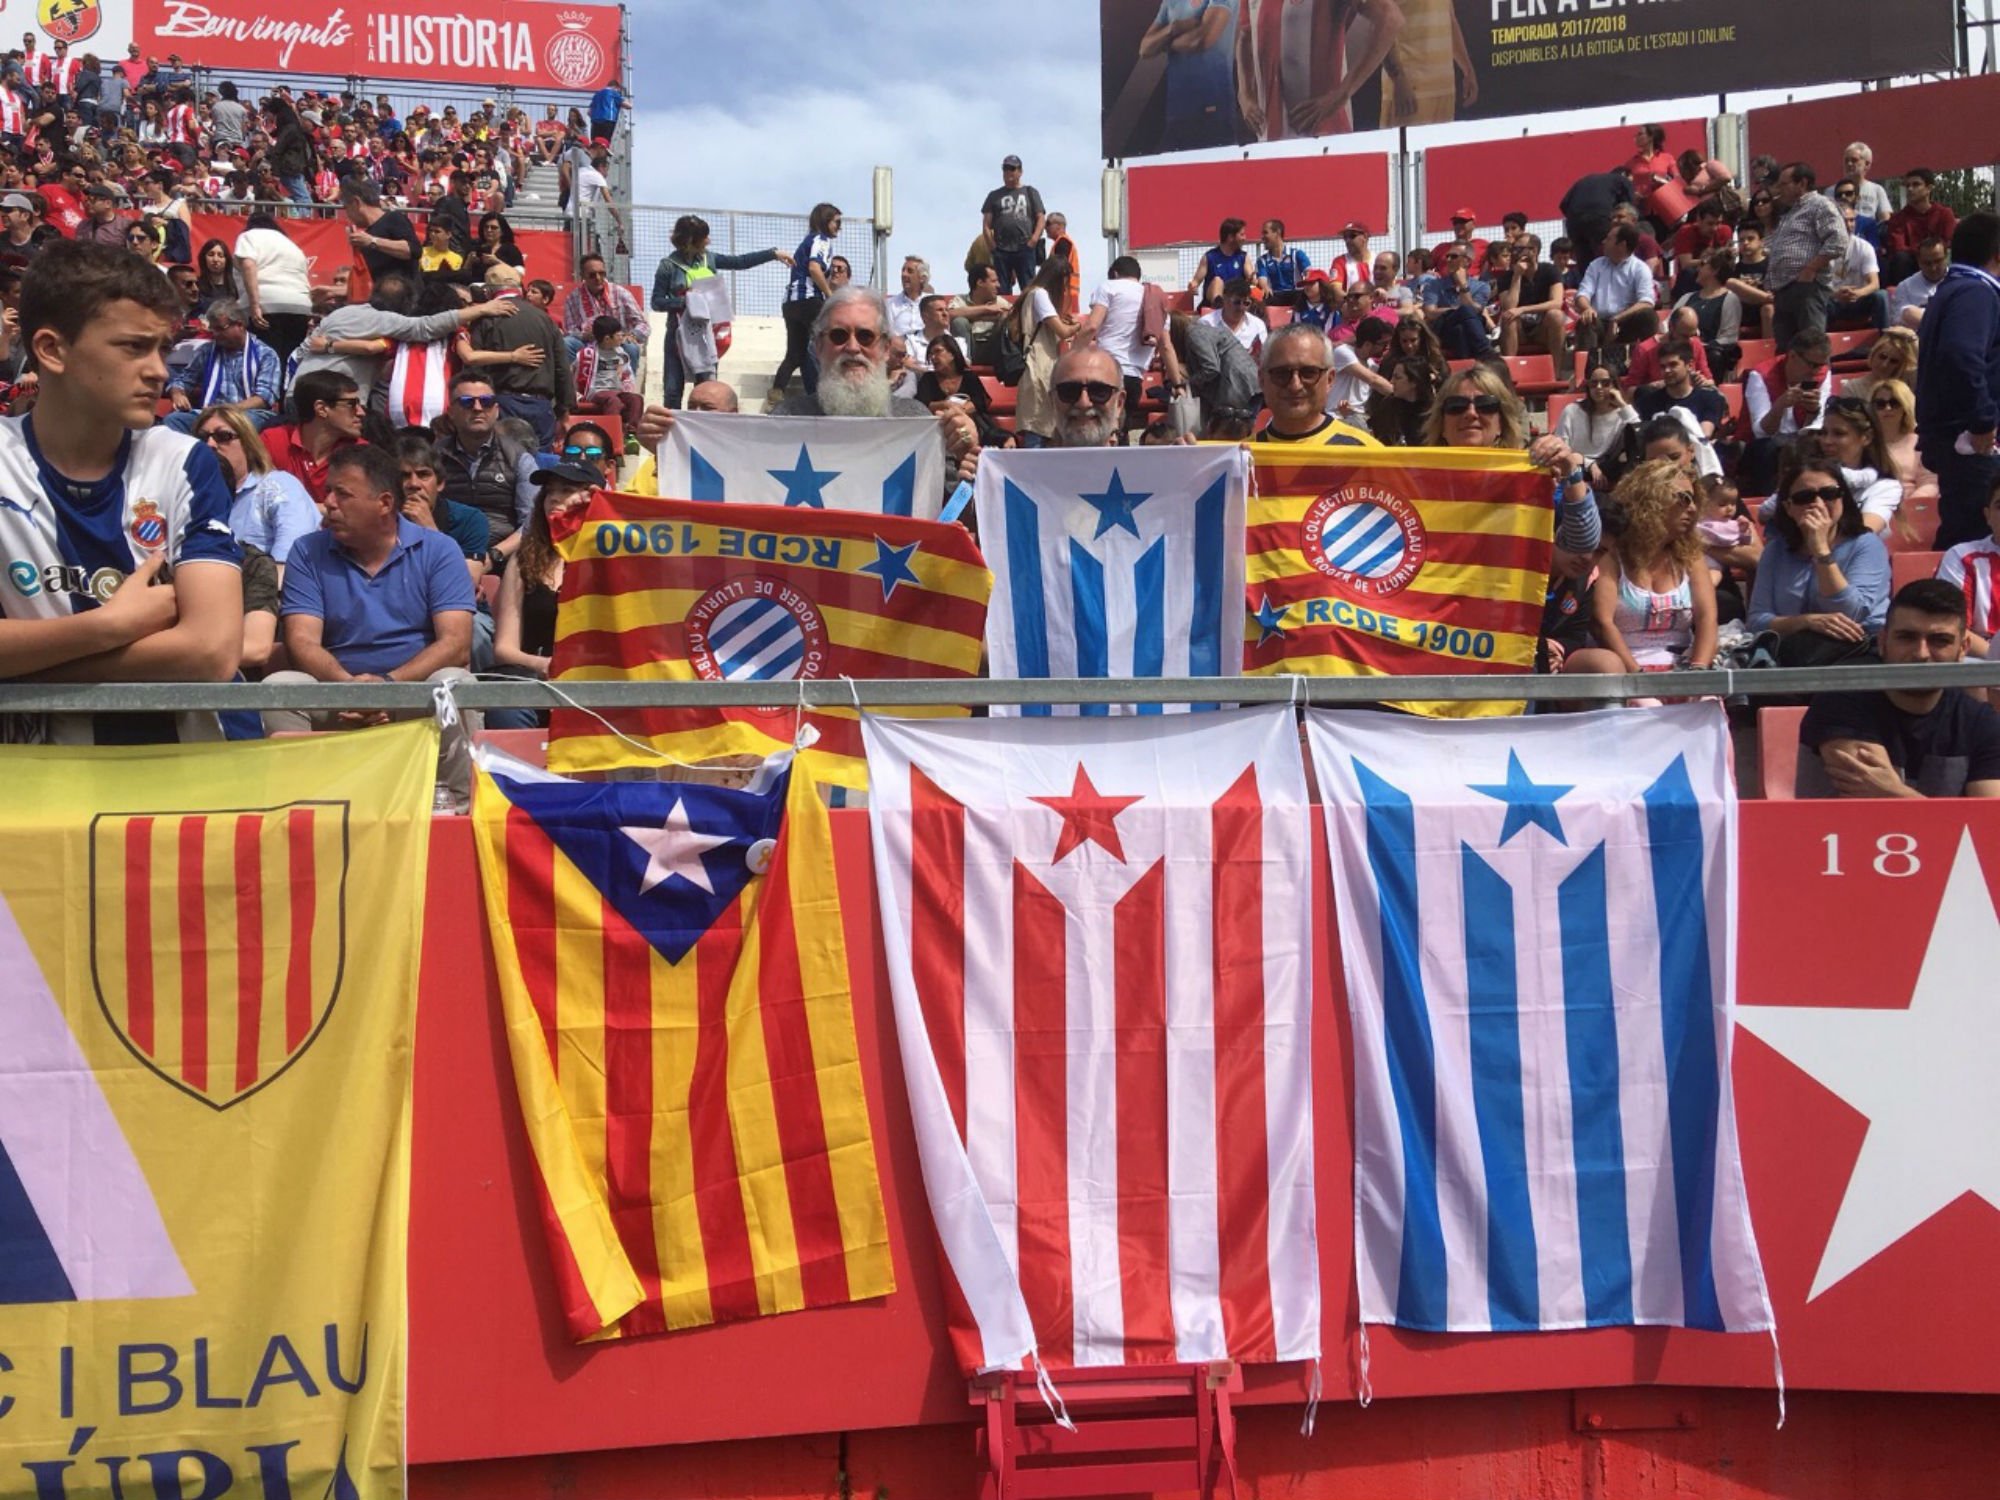 Un col·lectiu independentista de l'Espanyol reclama que el seu club s'enfronti als radicals